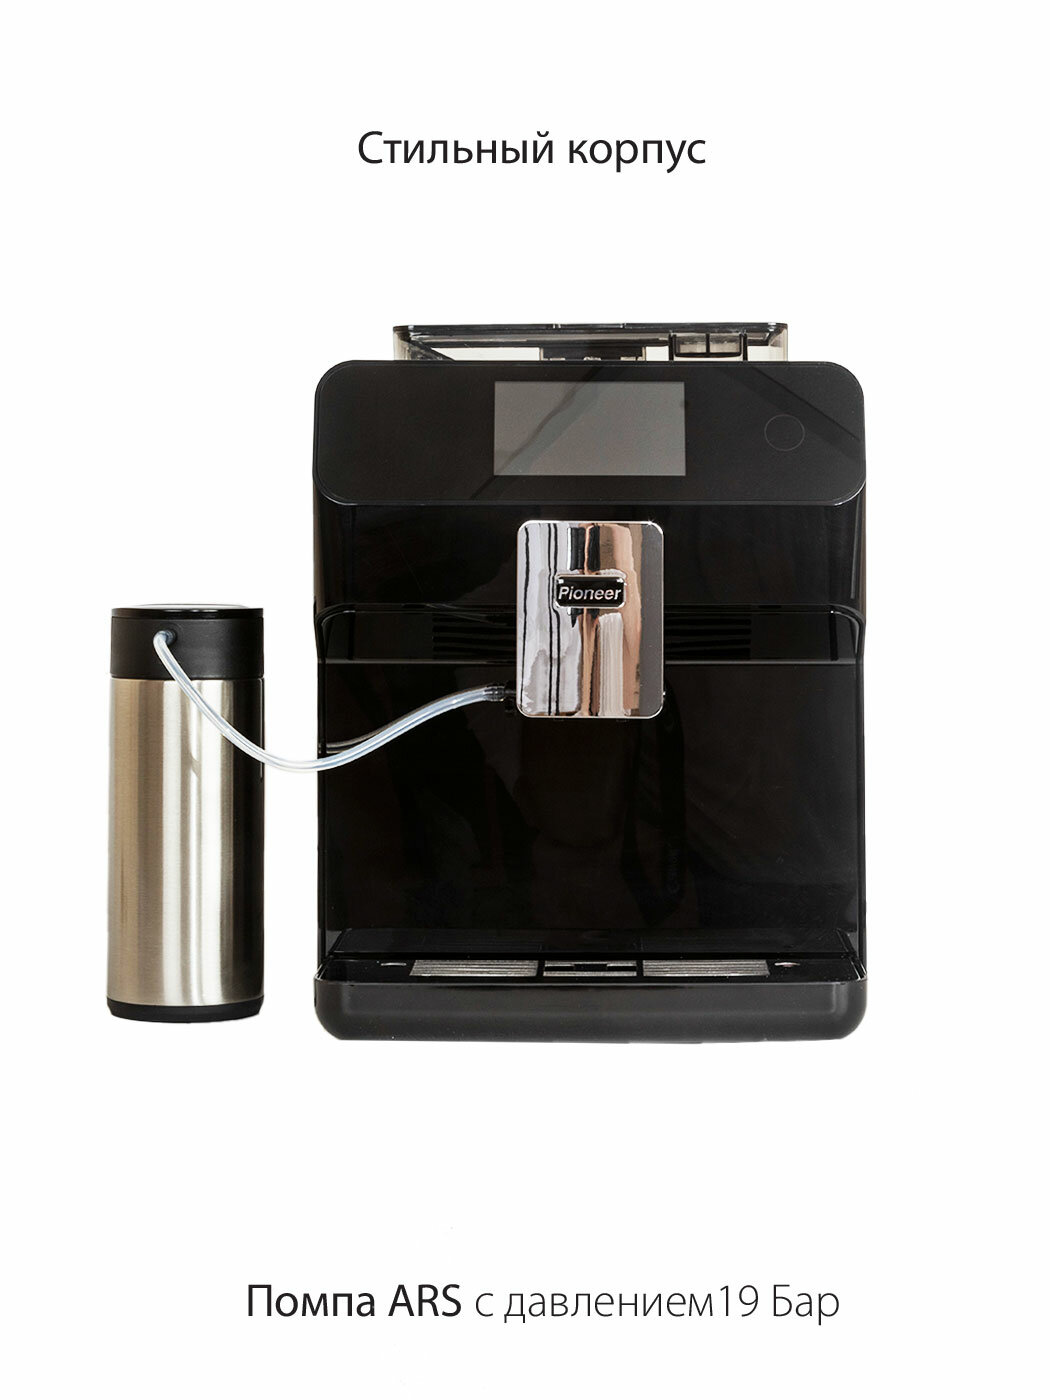 Кофемашина для дома Pioneer со встроенной кофемолкой, автокапучинатор, охладитель молока, 1500 Вт - фотография № 4